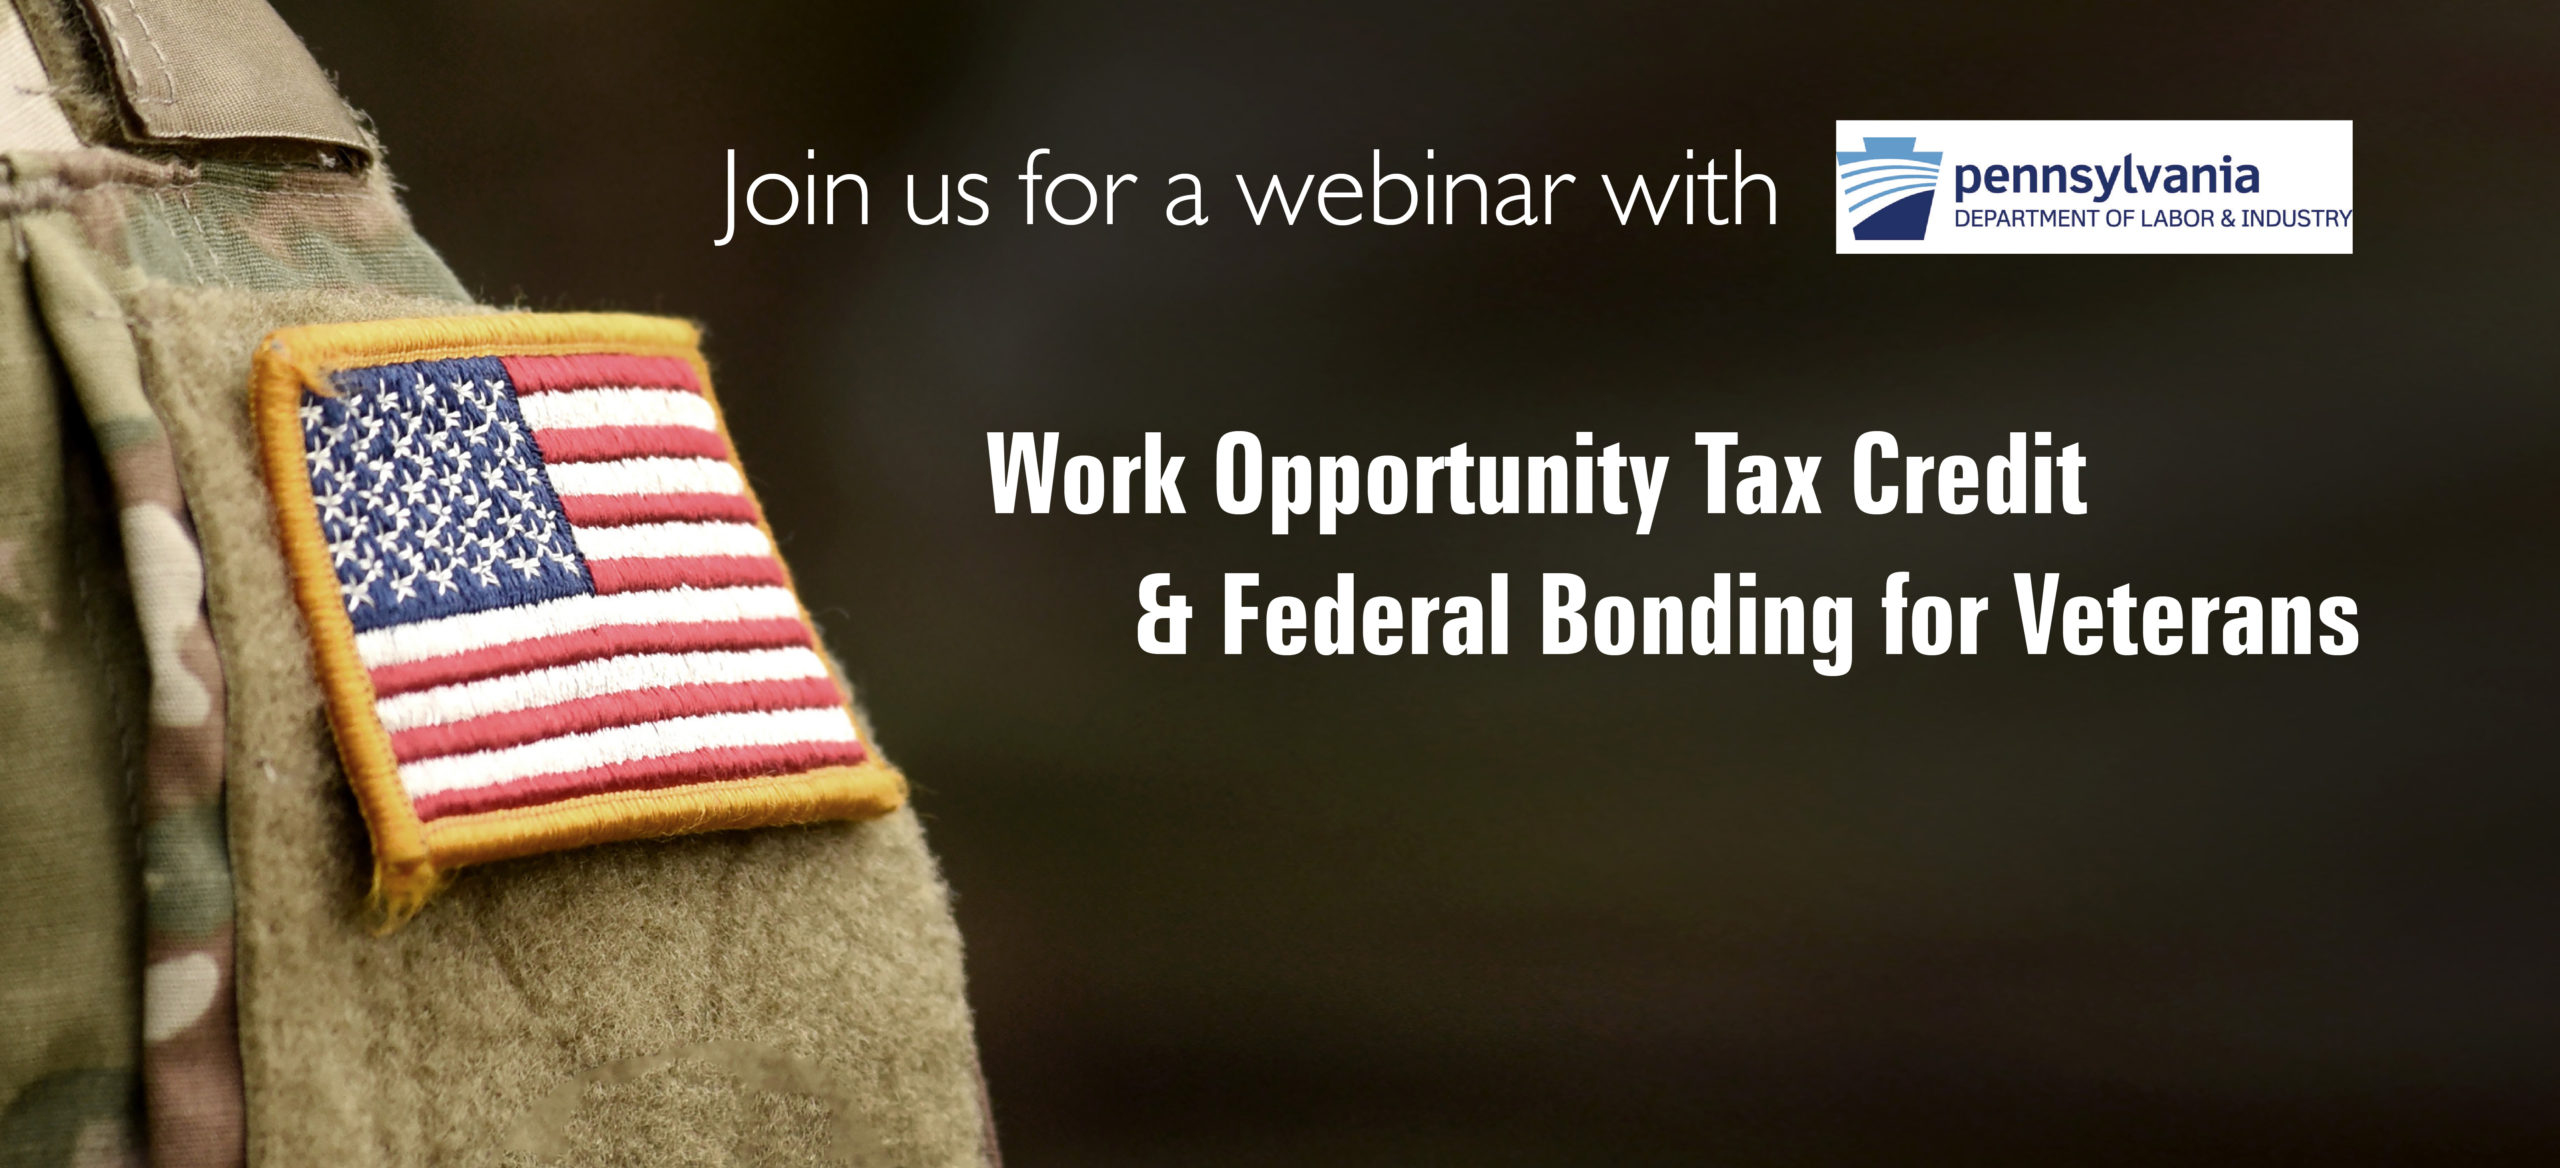 Work Opportunity Tax Credit & Federal Bonding for Veterans Webinar